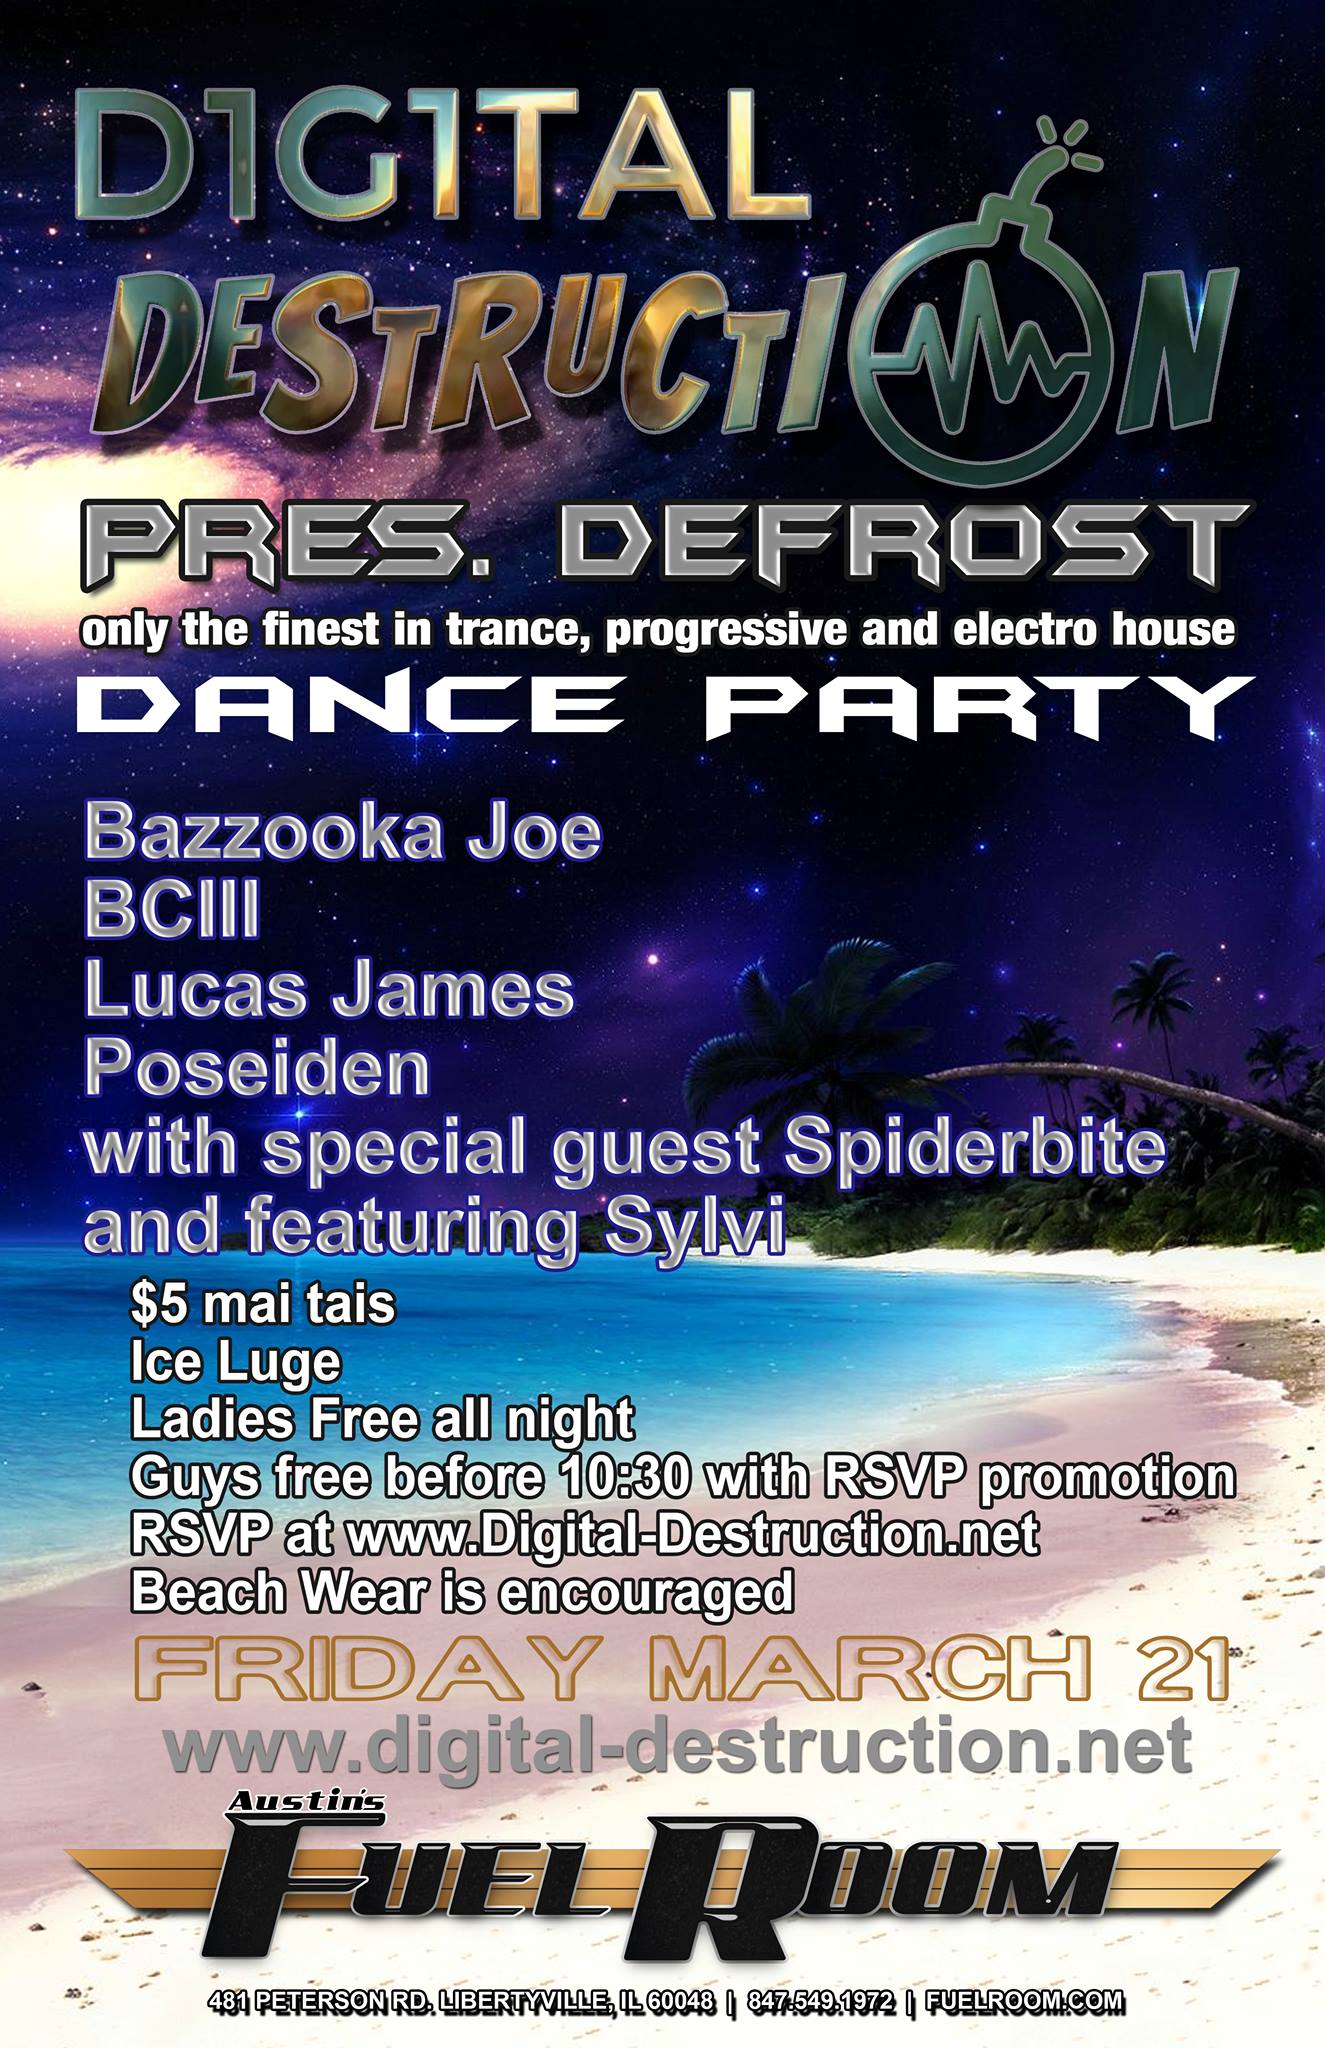 Digital Destruction Present's: Defrost Dance Party @ Austin's Fuel Room (Libertyville, IL) - 03/21/2014